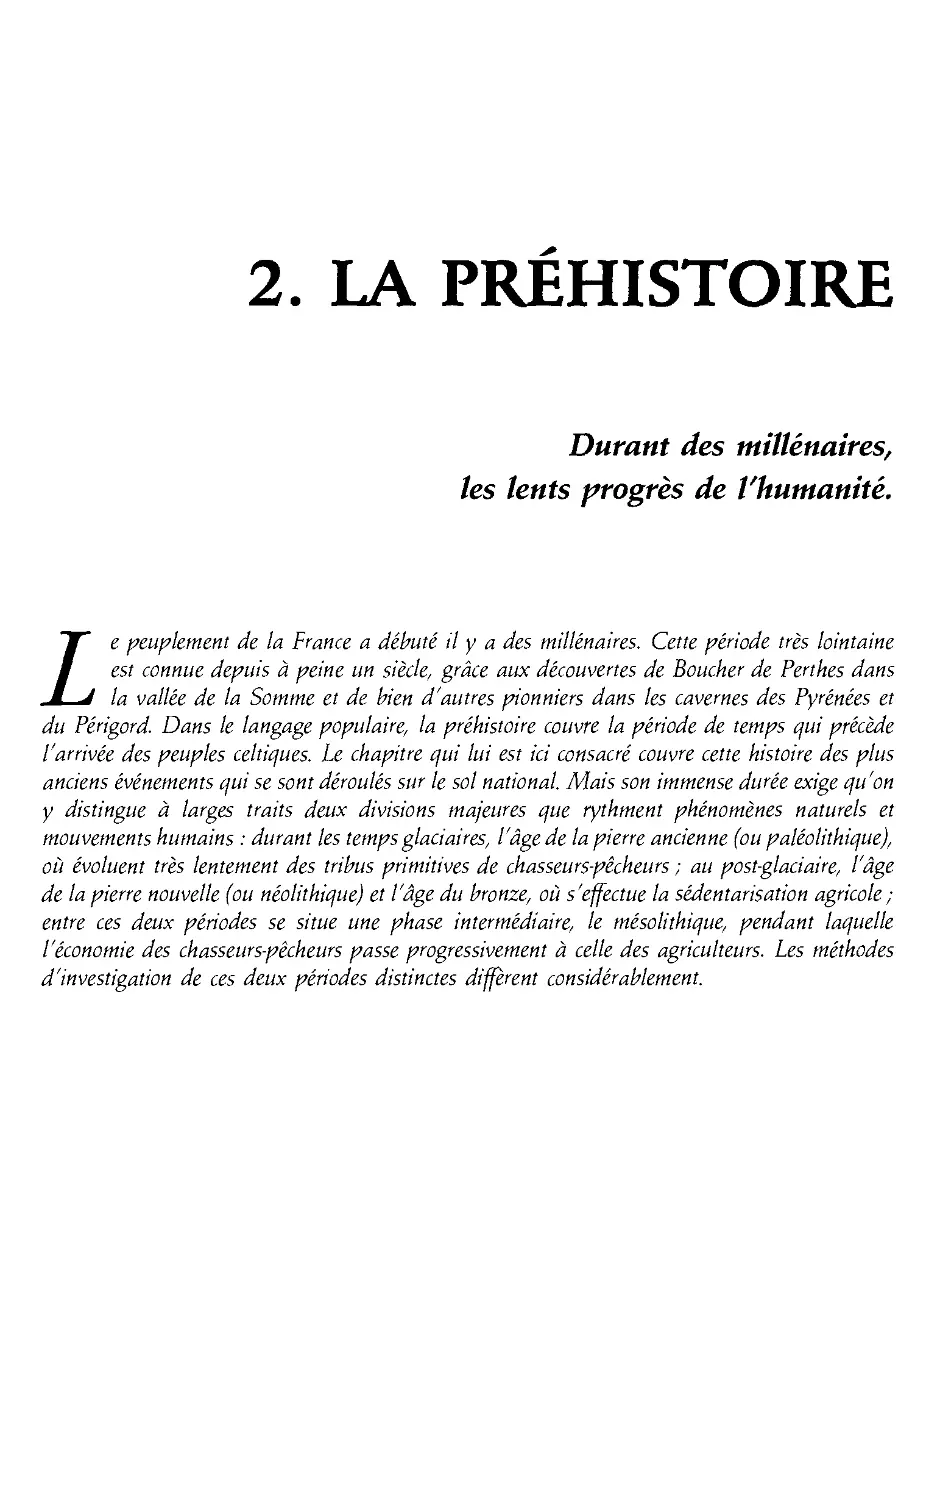 2. La Prehistoire [39]